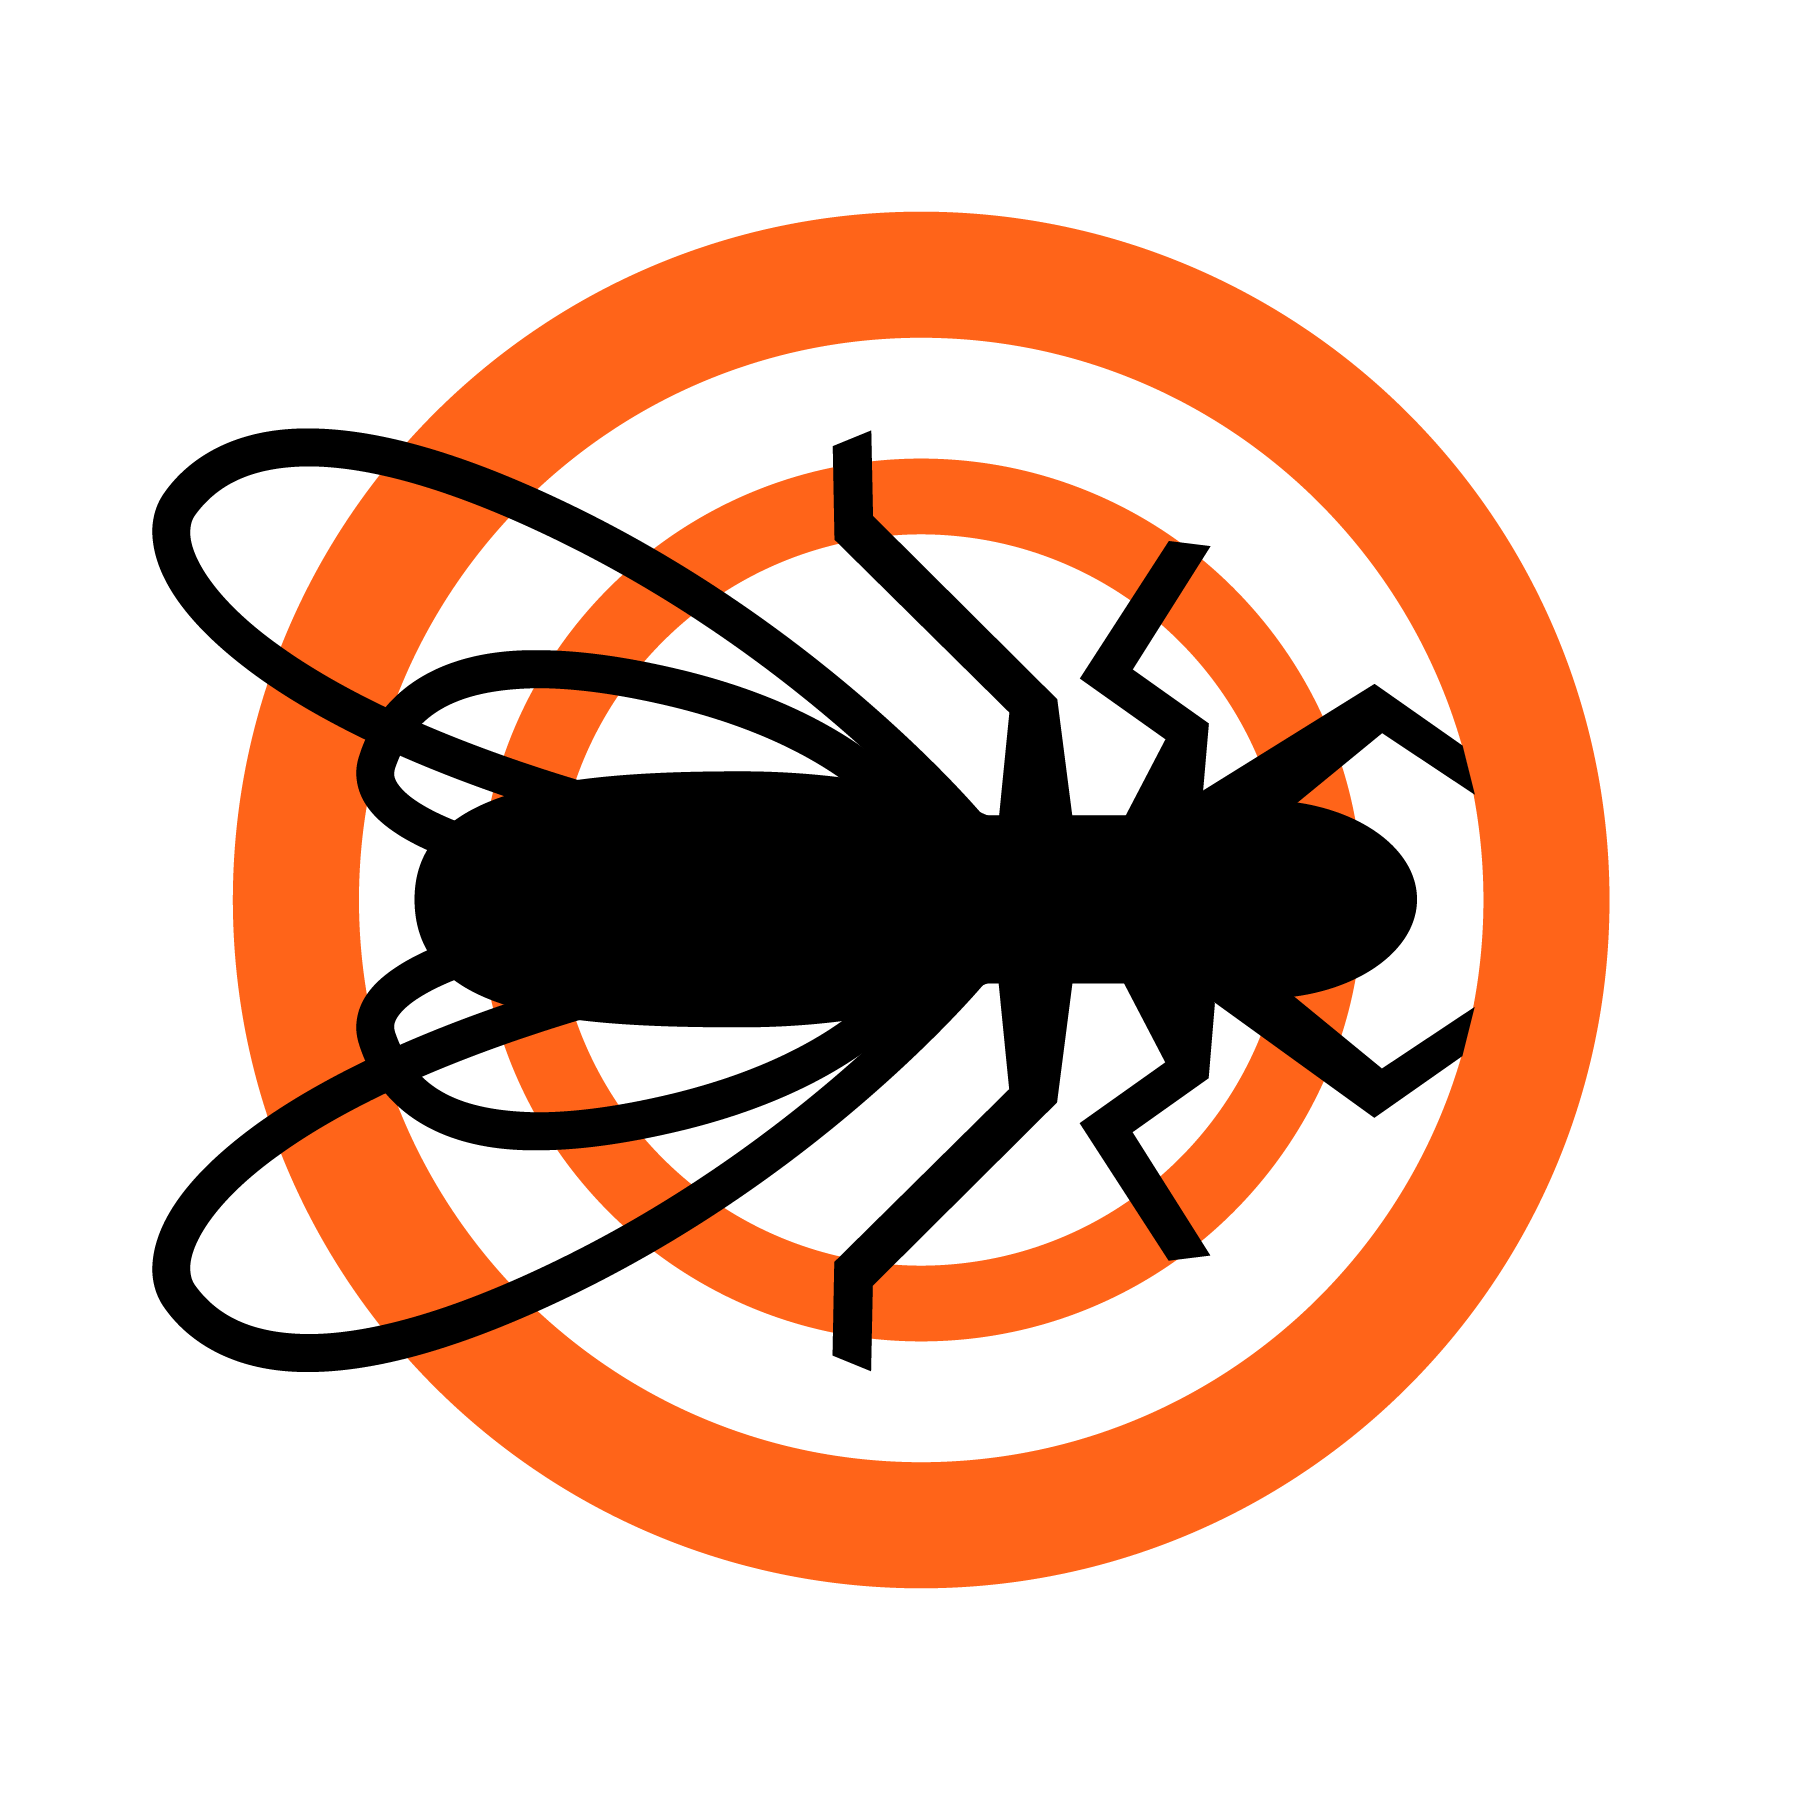 Ortex Termite and Pest Control - Huntsville Logo